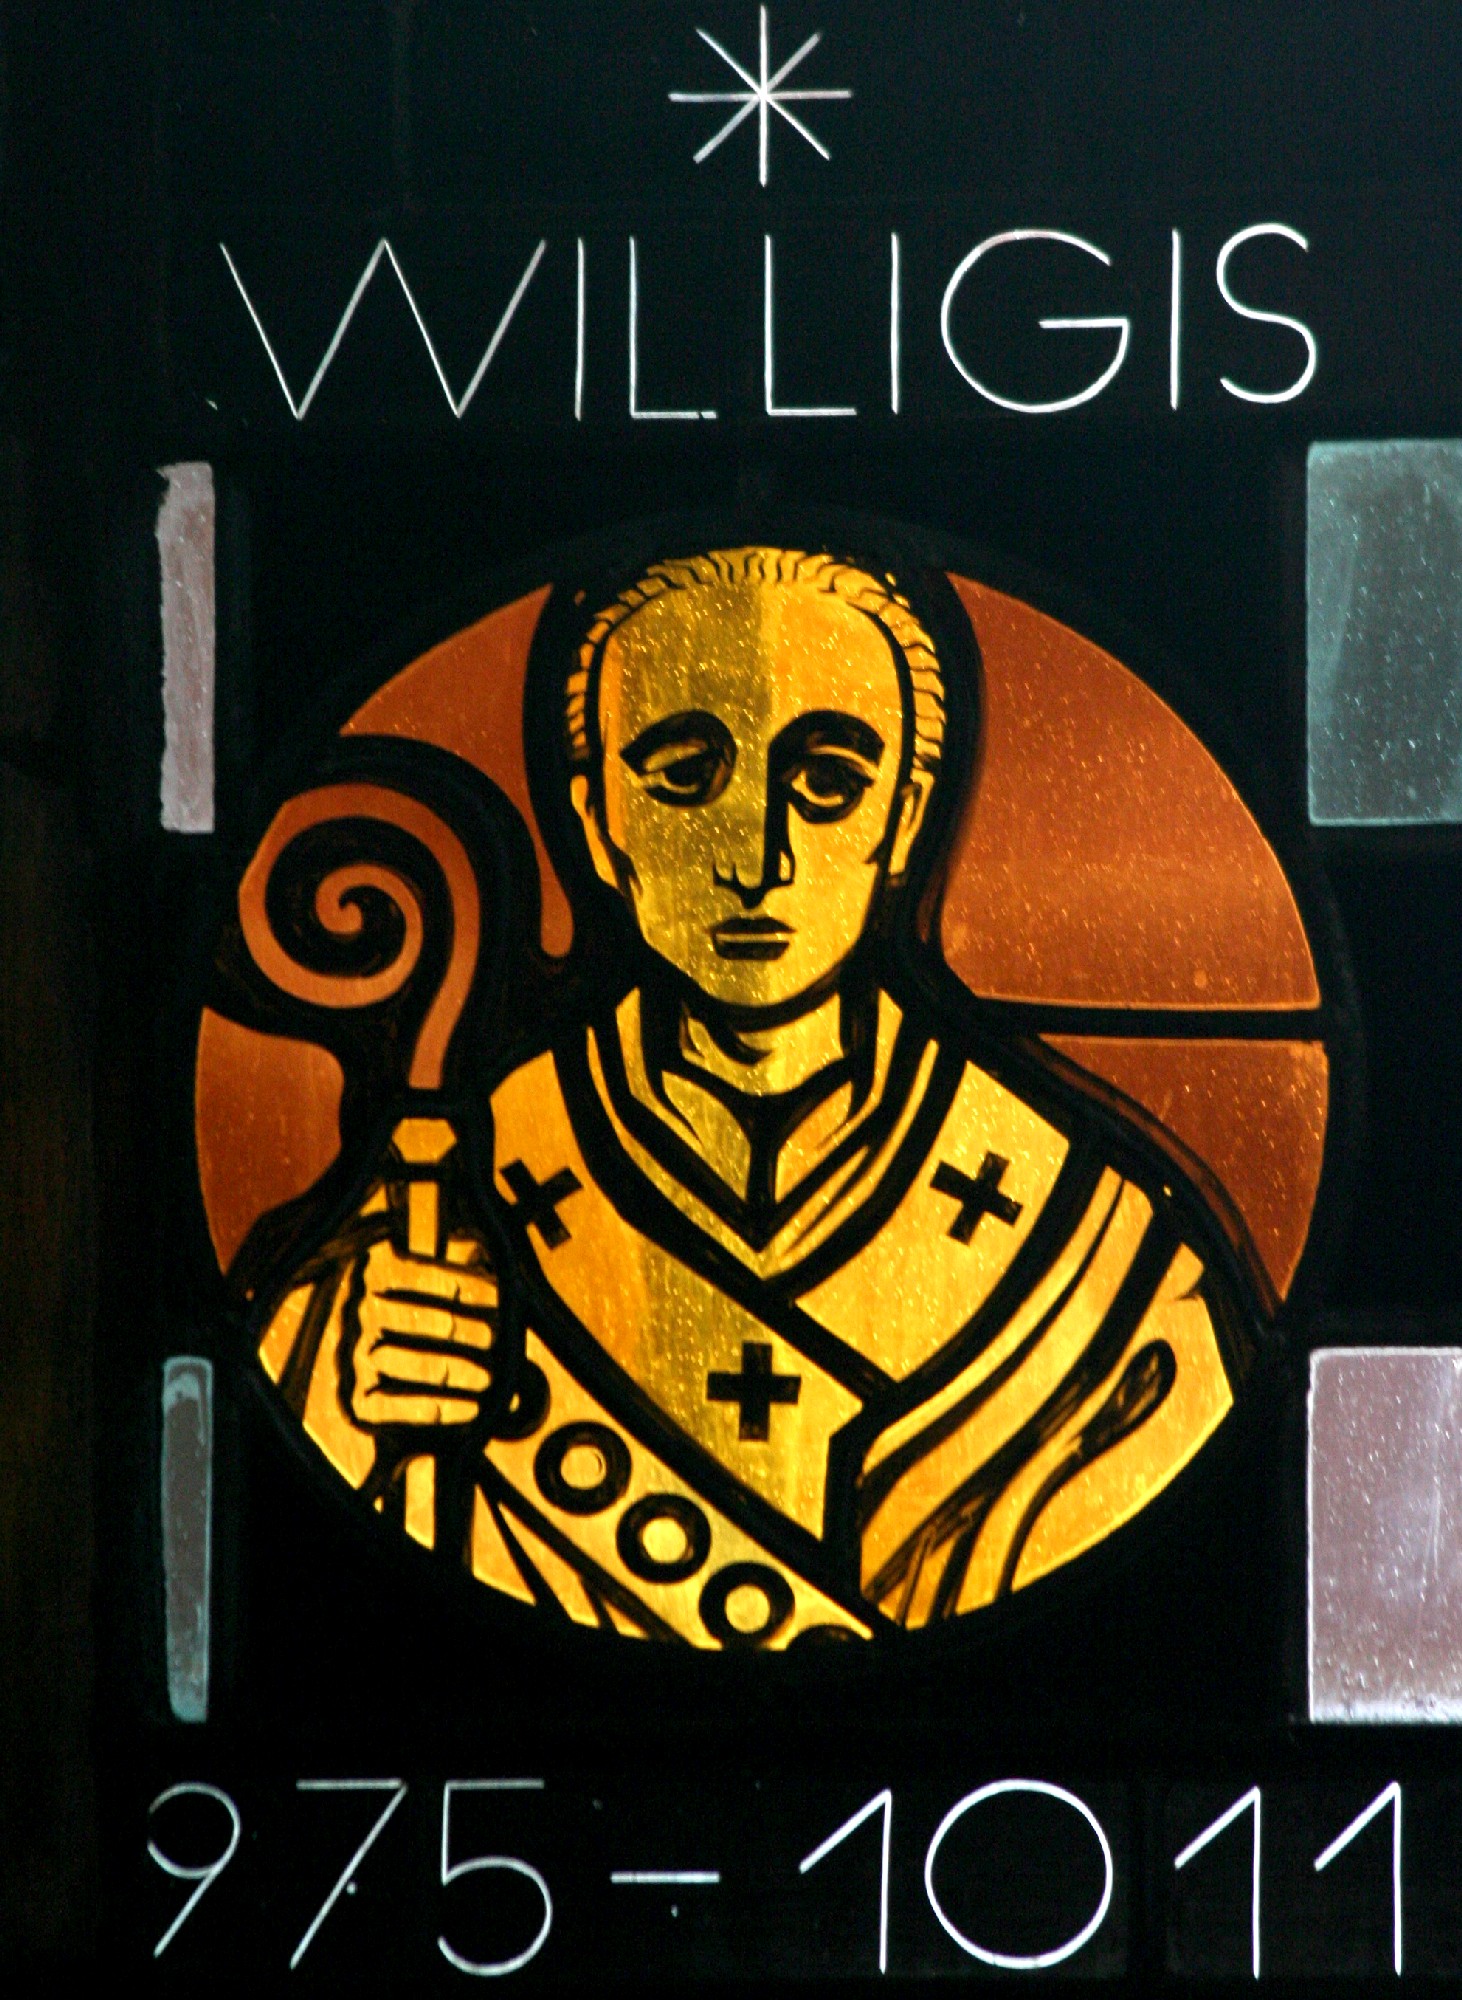 WILLIGIS (c) Bistum Mainz / Matschak (Ersteller: Bistum Mainz / Matschak)